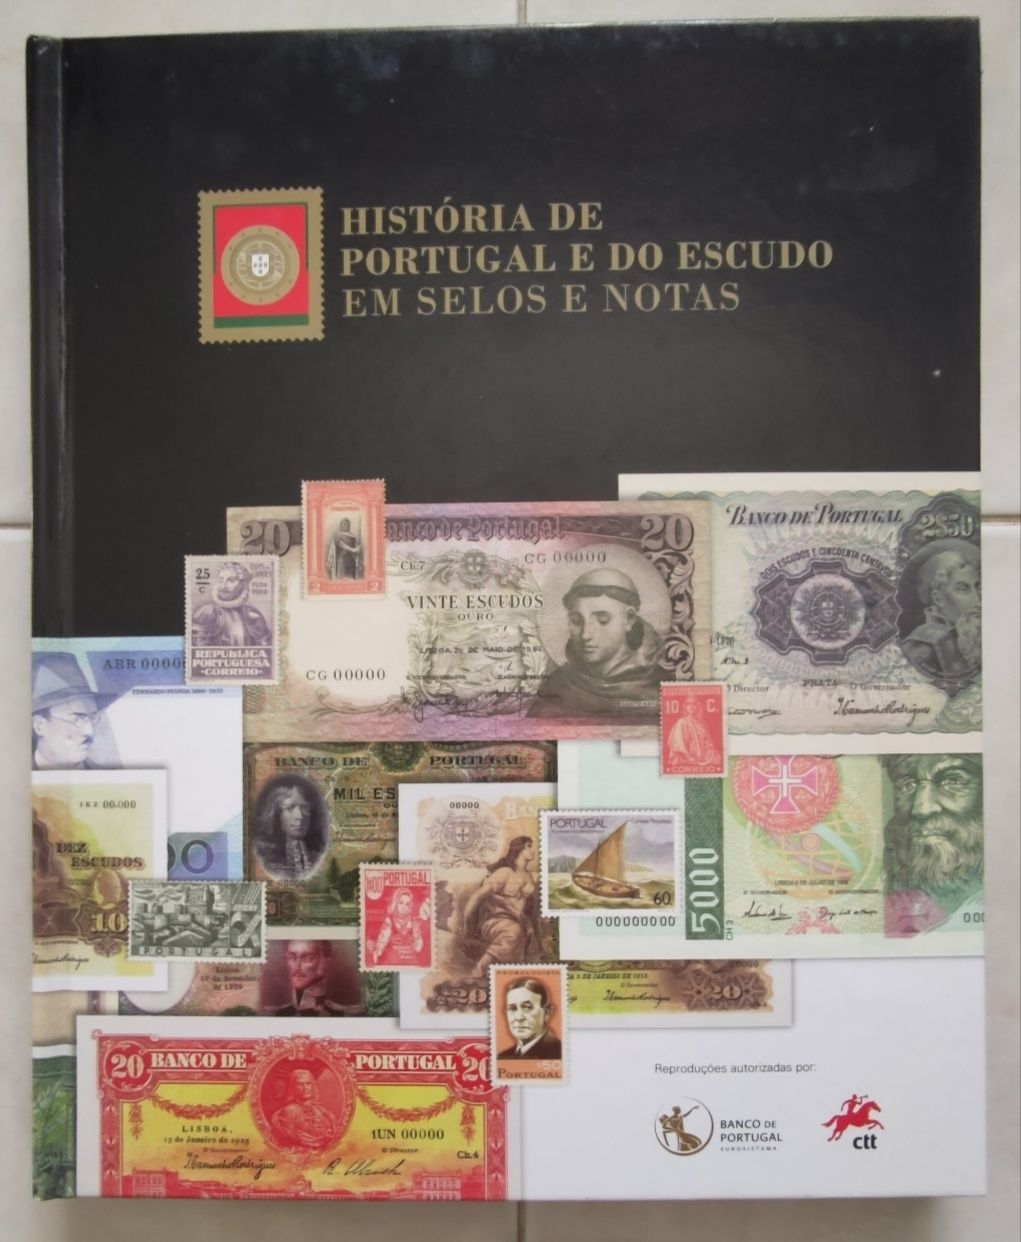 Historia de Portugal e do Escudo em selos e notas